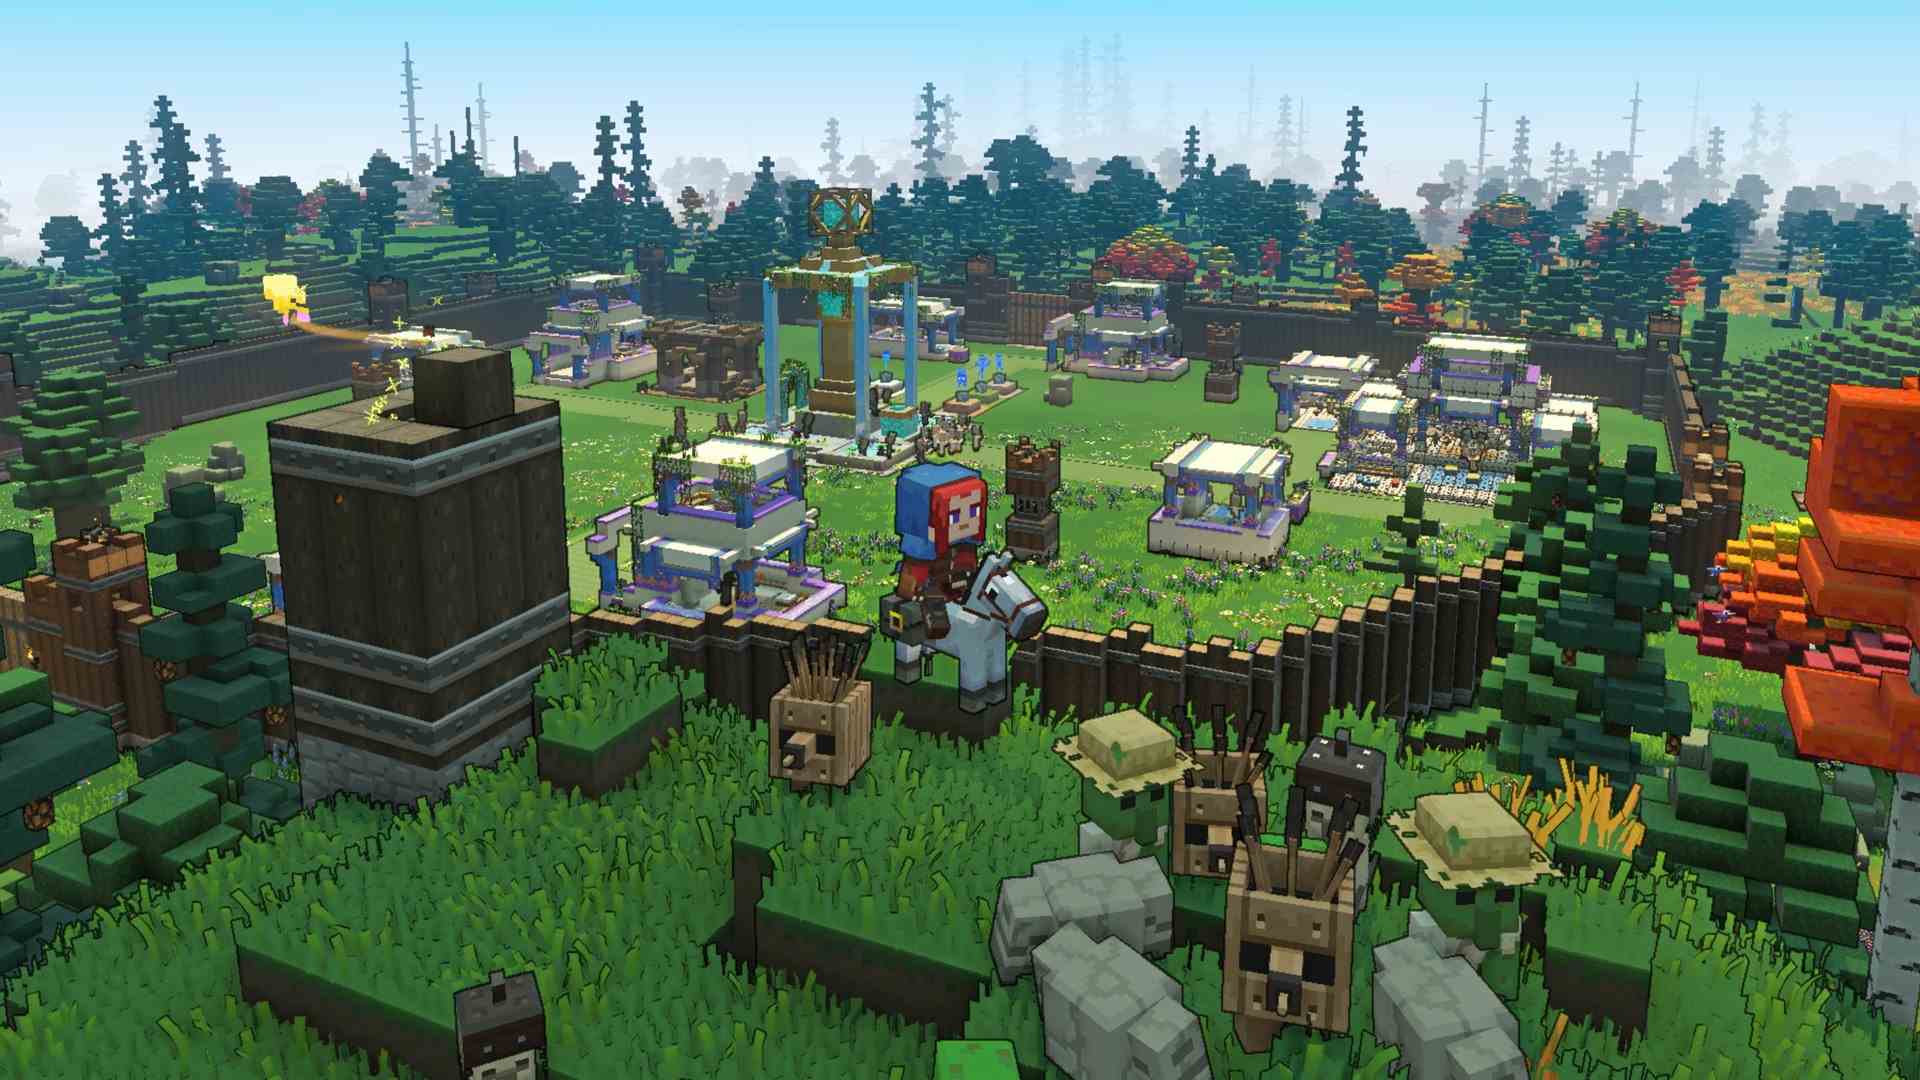 Le joueur de Minecraft Legends sur une monture se tient sur une colline herbeuse surplombant une base avec des murs en bois et plusieurs structures à l'intérieur.